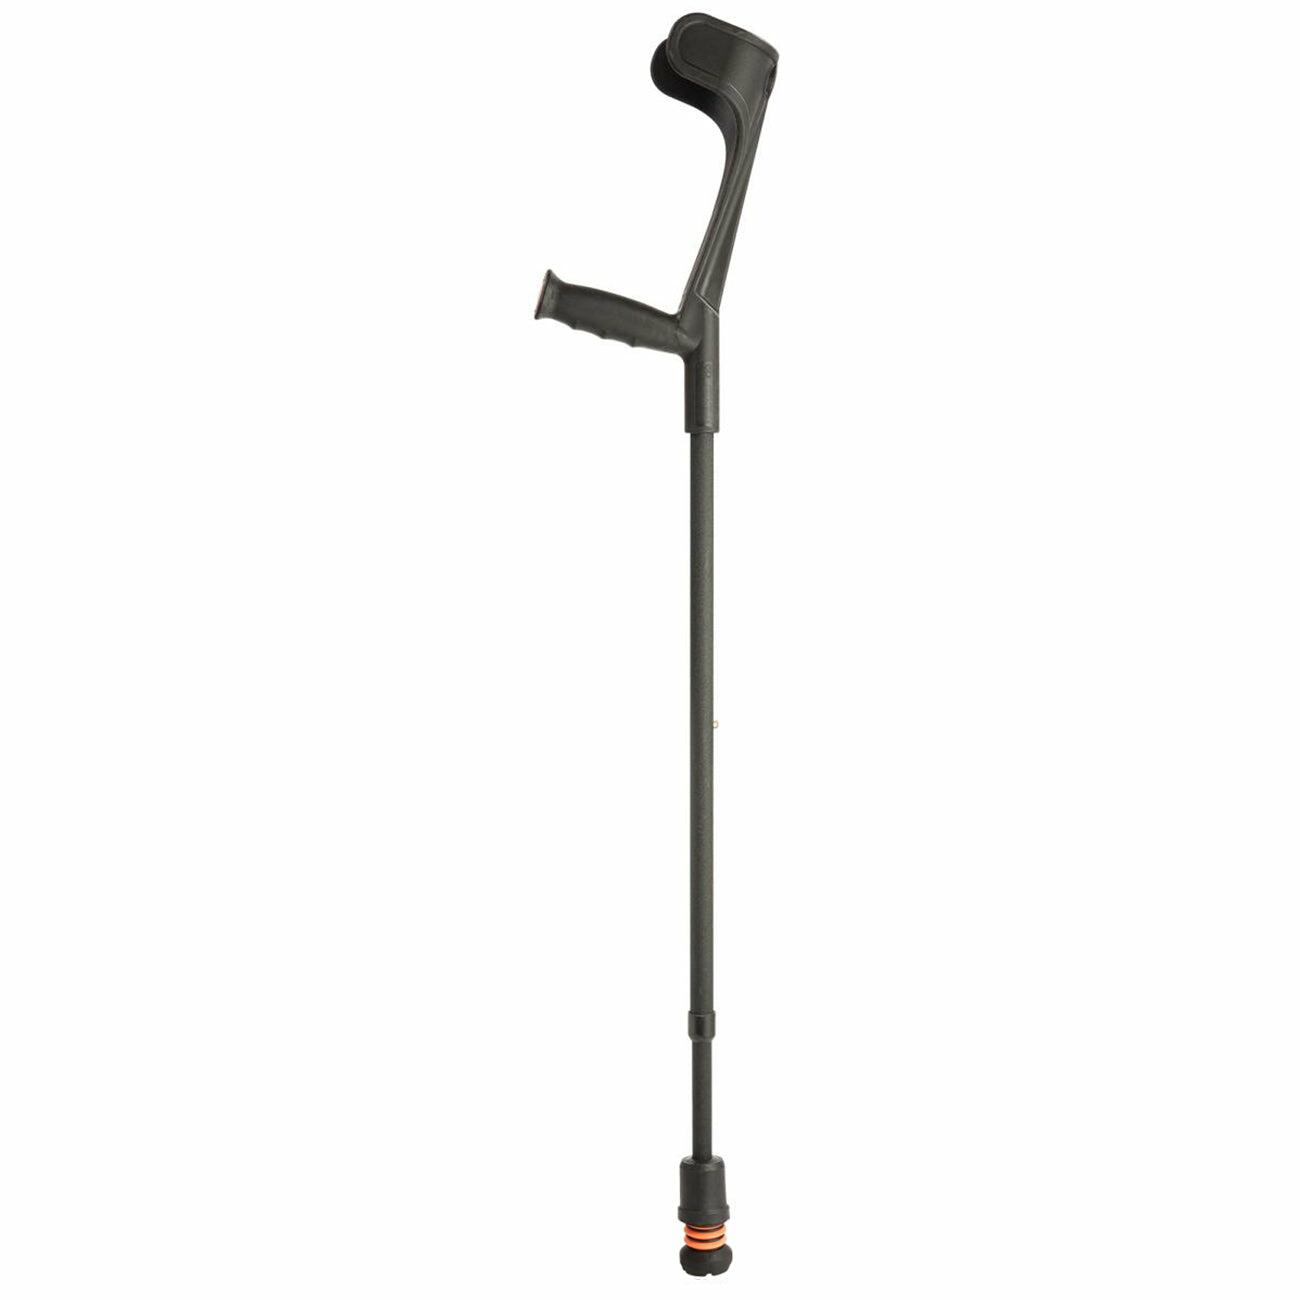 A single black Flexyfoot Soft Grip Open Cuff Crutch